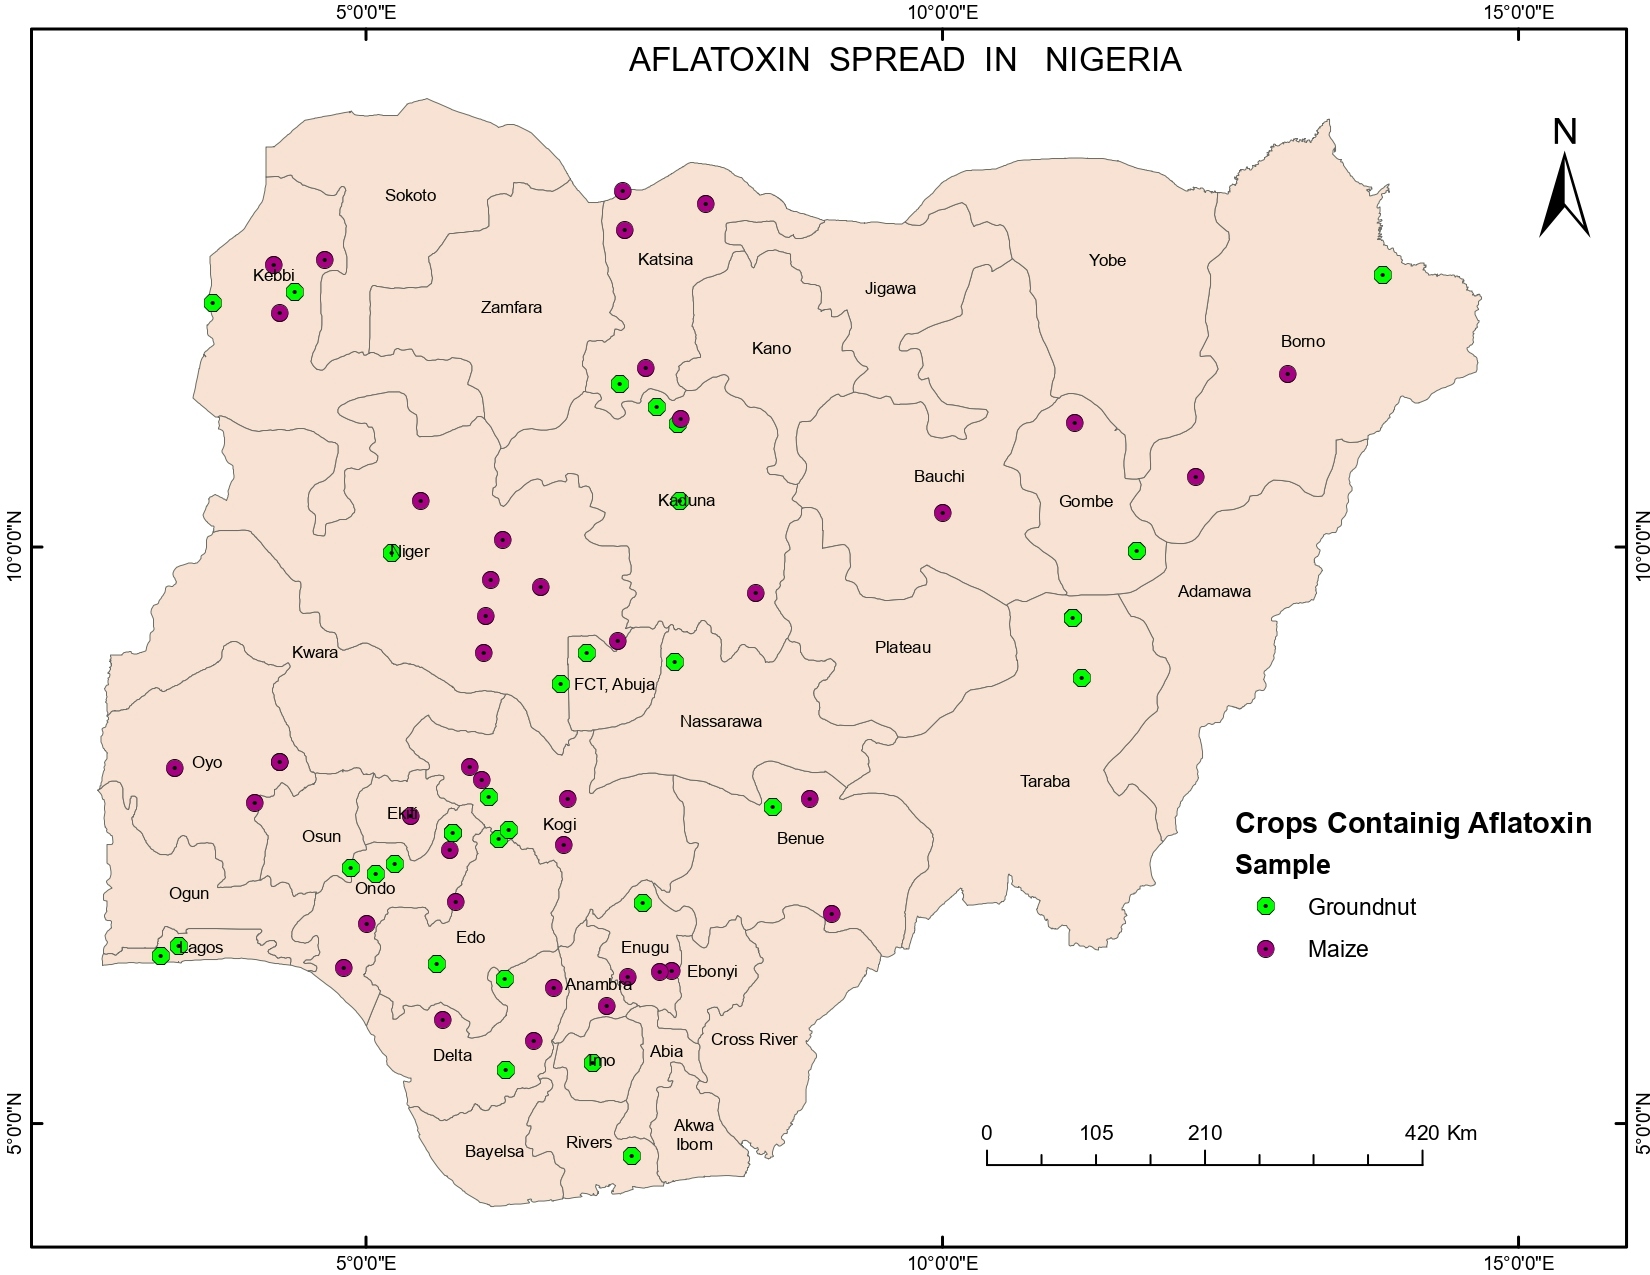  THE SPREAD OF AFLATOXIN IN NIGERIA